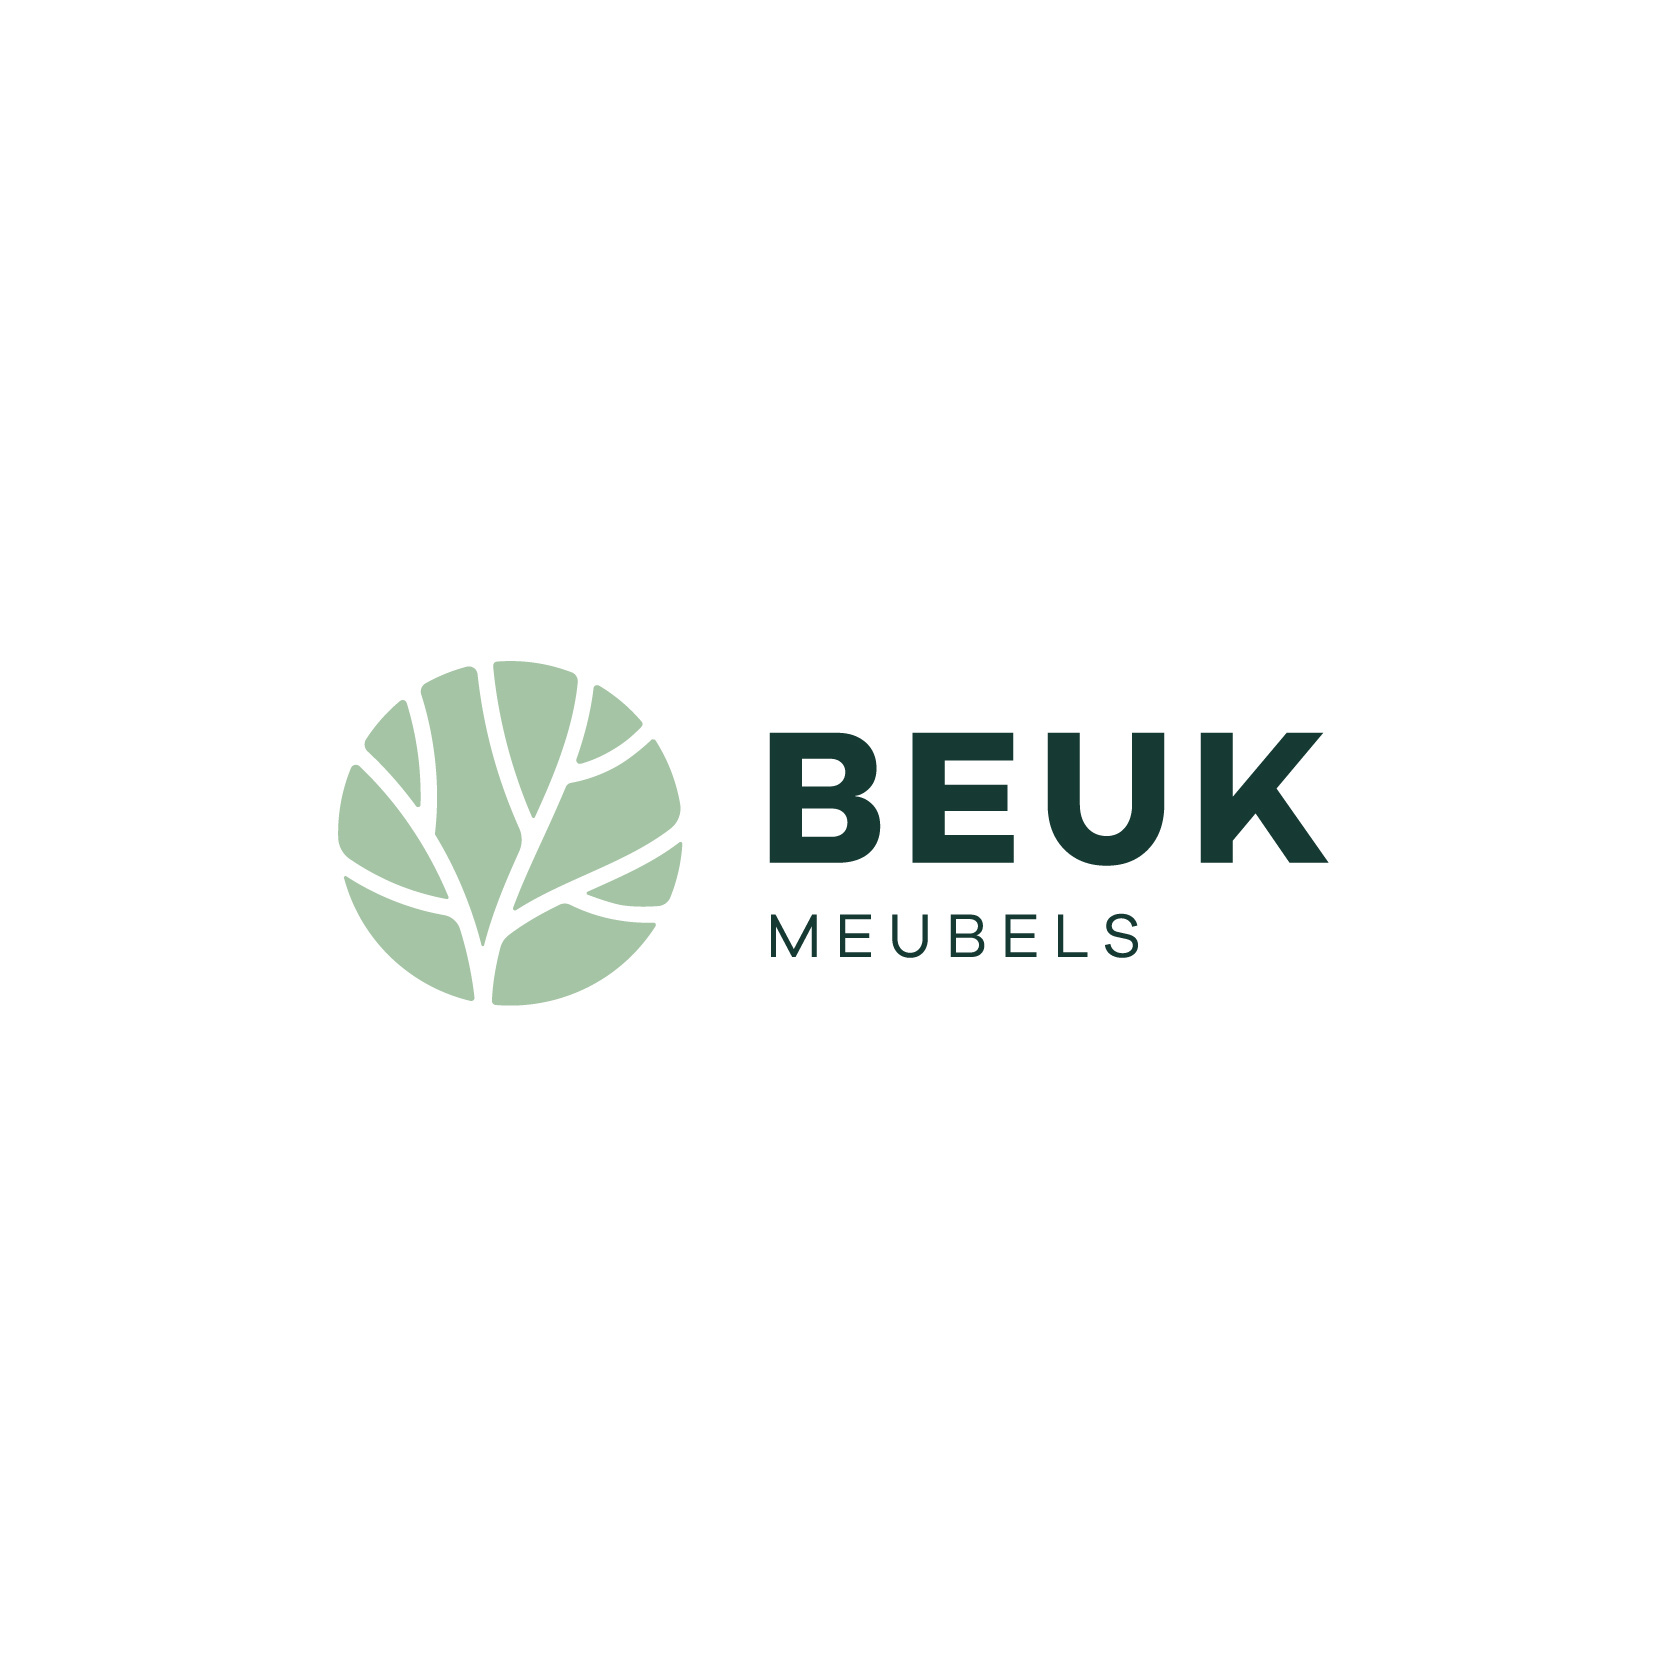 BEUK Meubels